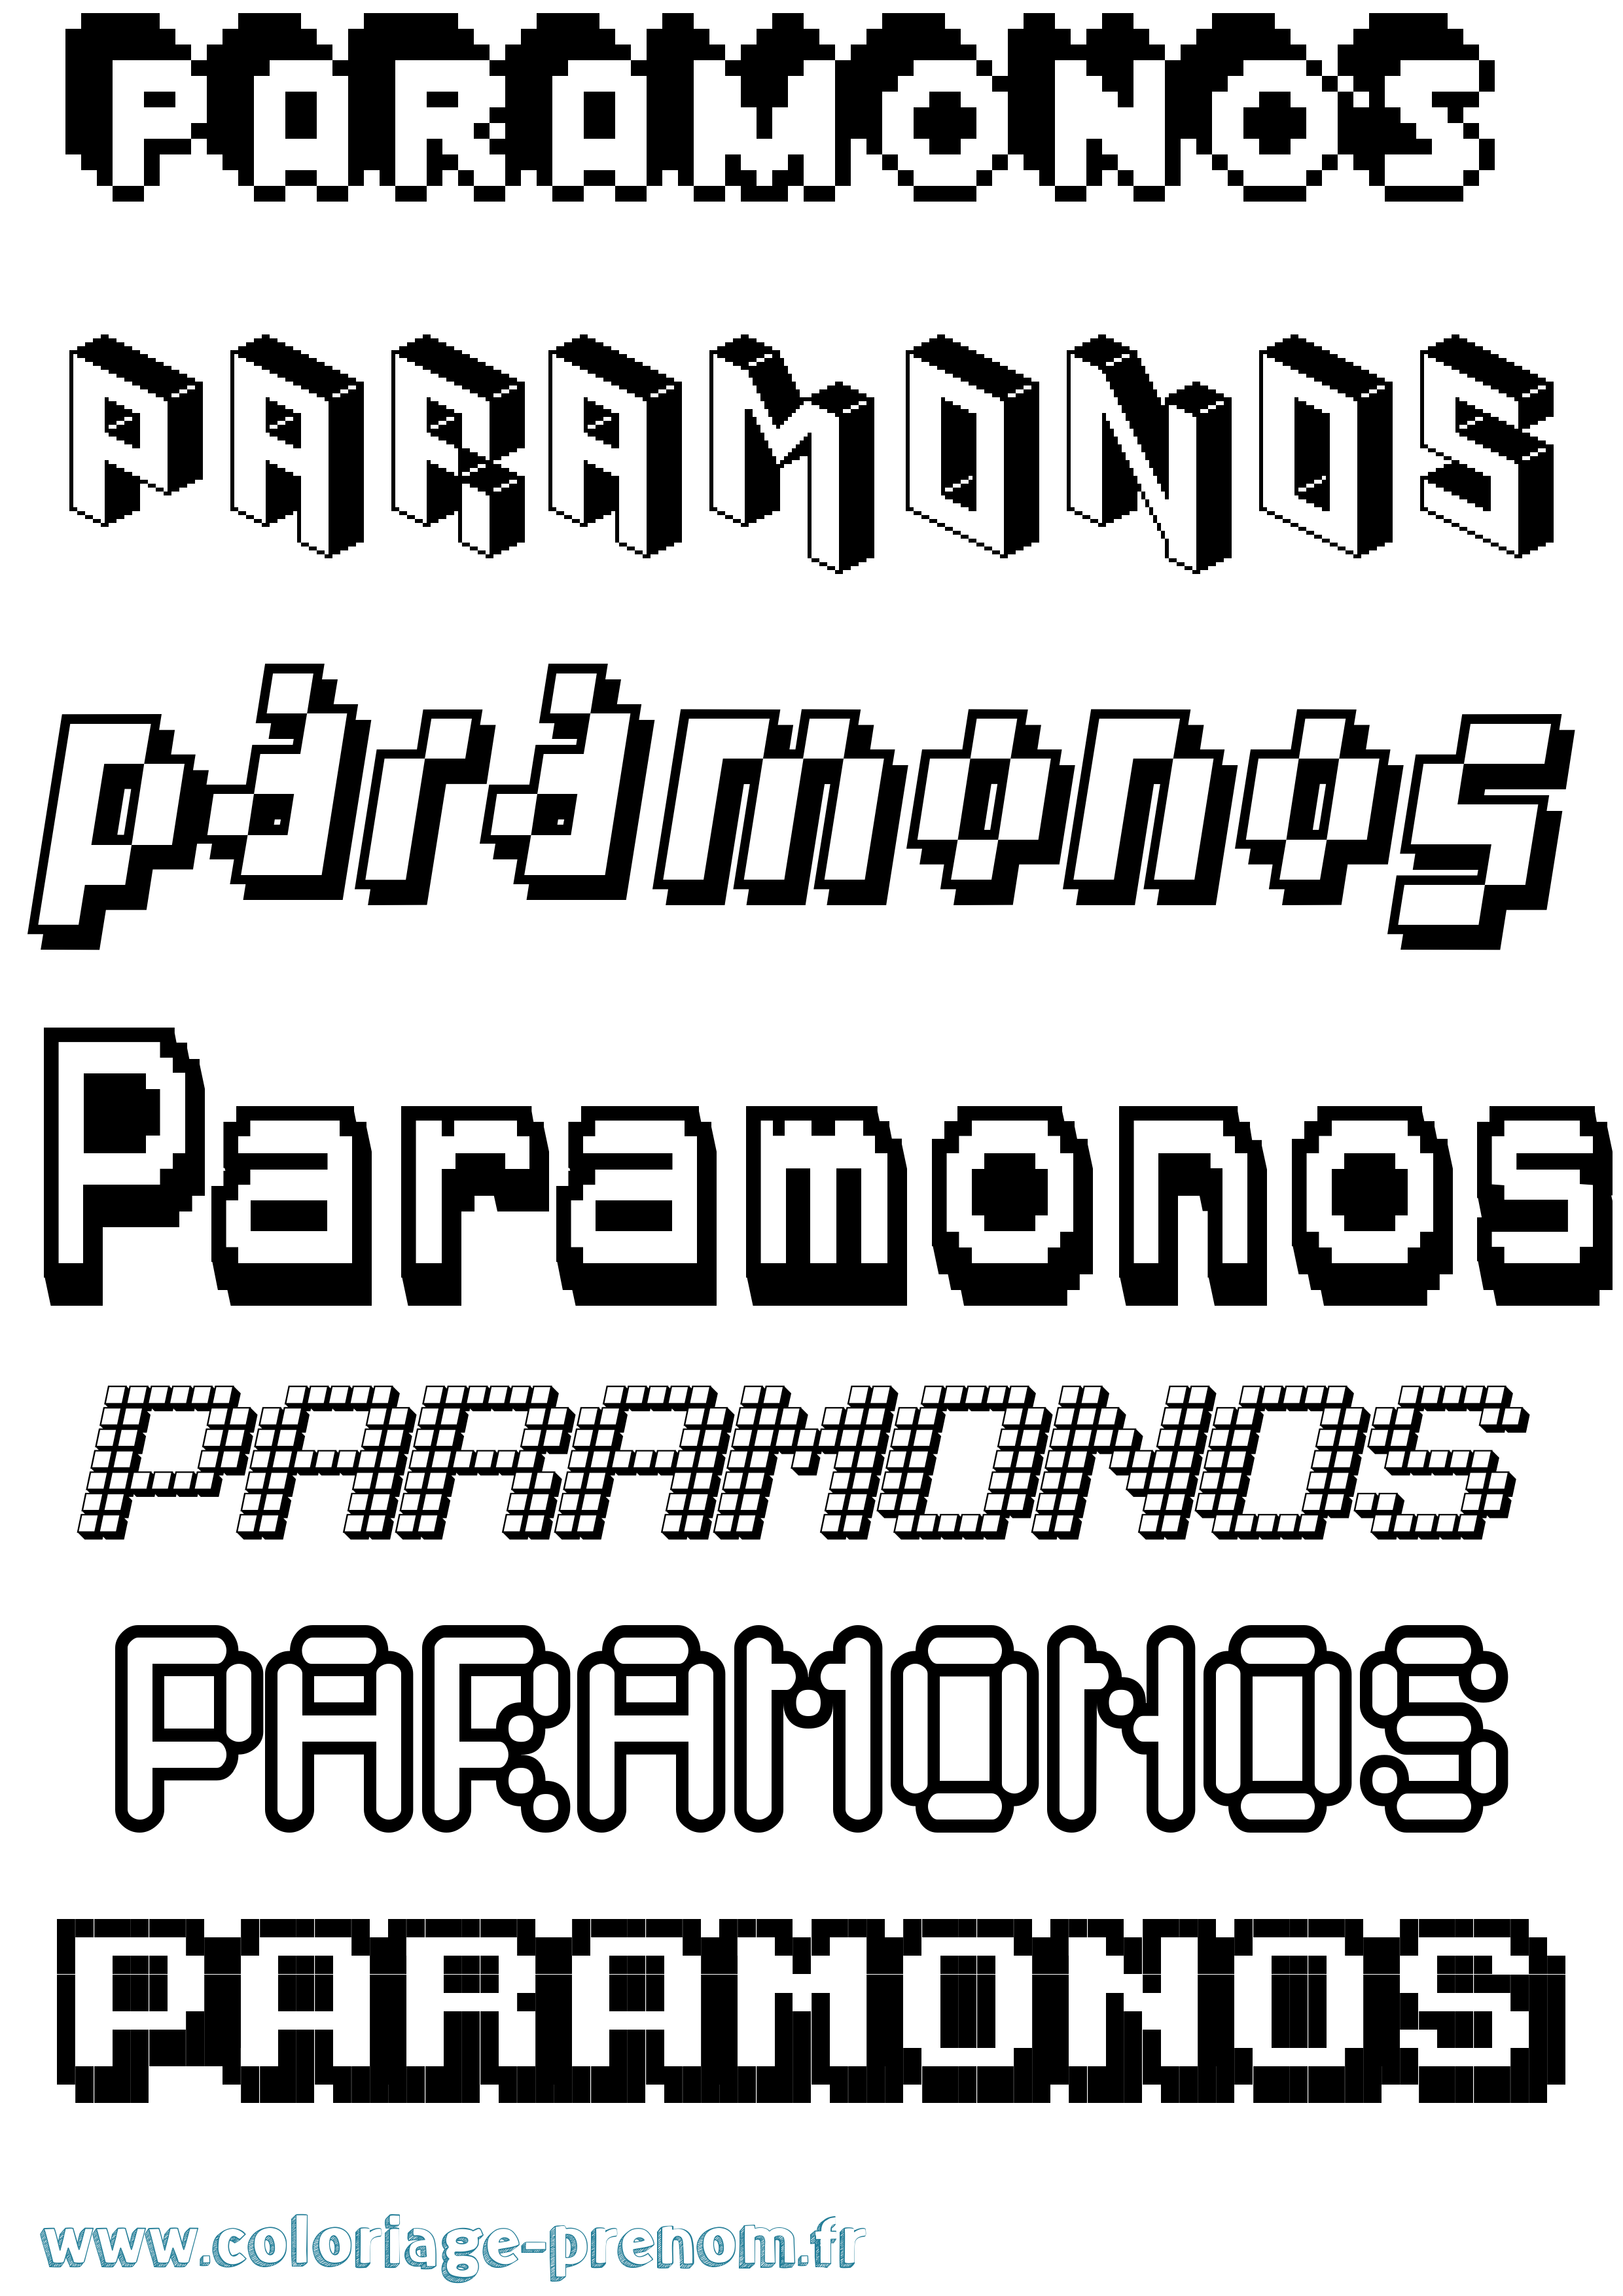 Coloriage prénom Paramonos Pixel